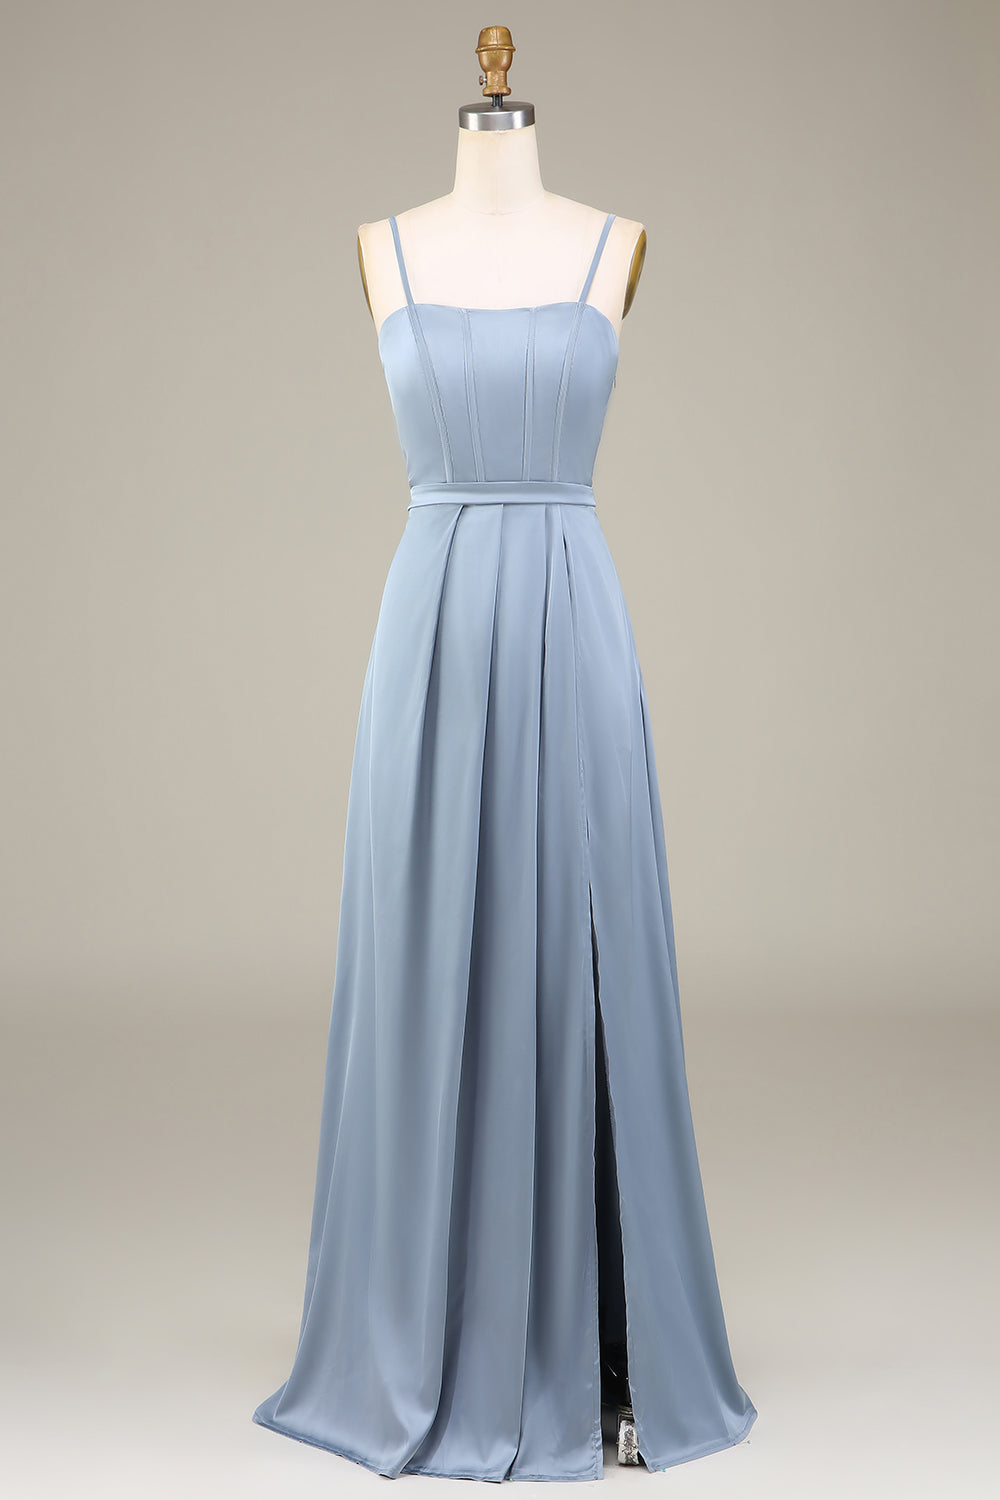 Dusty Blue A-Line Spaghetti stropper Satin Long brudepike kjole